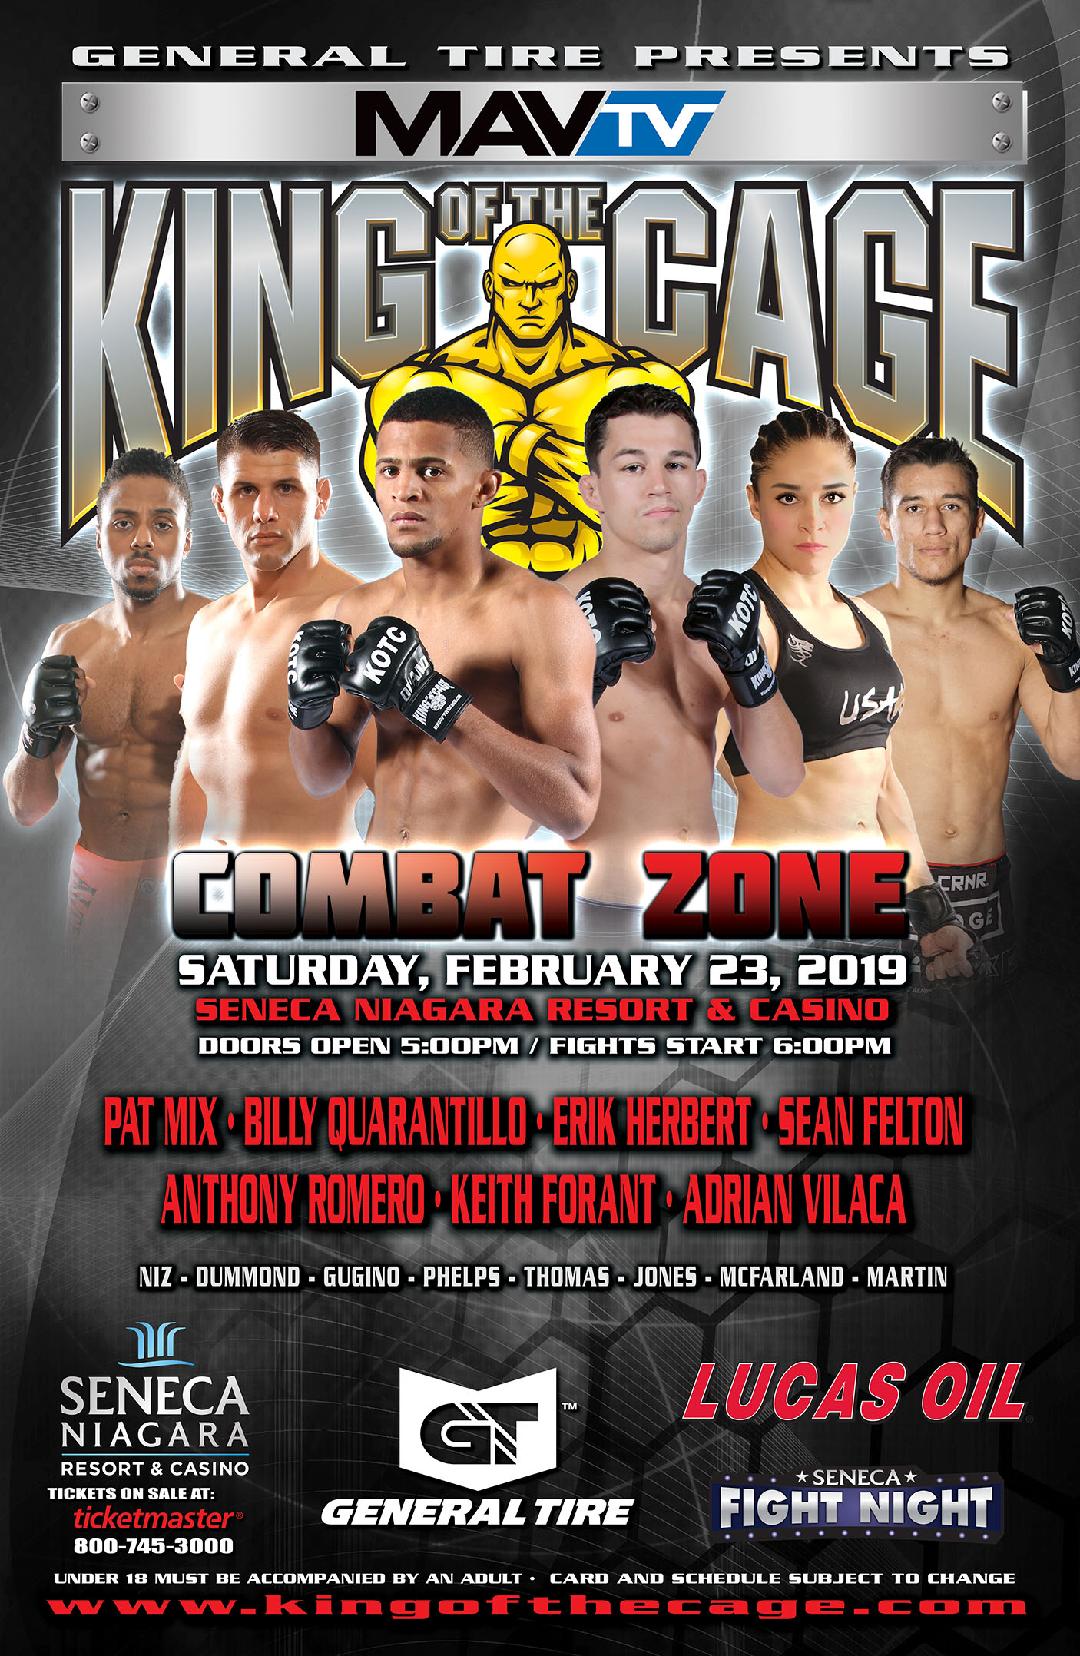 King of the Cage Returns to Seneca Niagara Resort & Casino on February 23 “COMBAT ZONE”